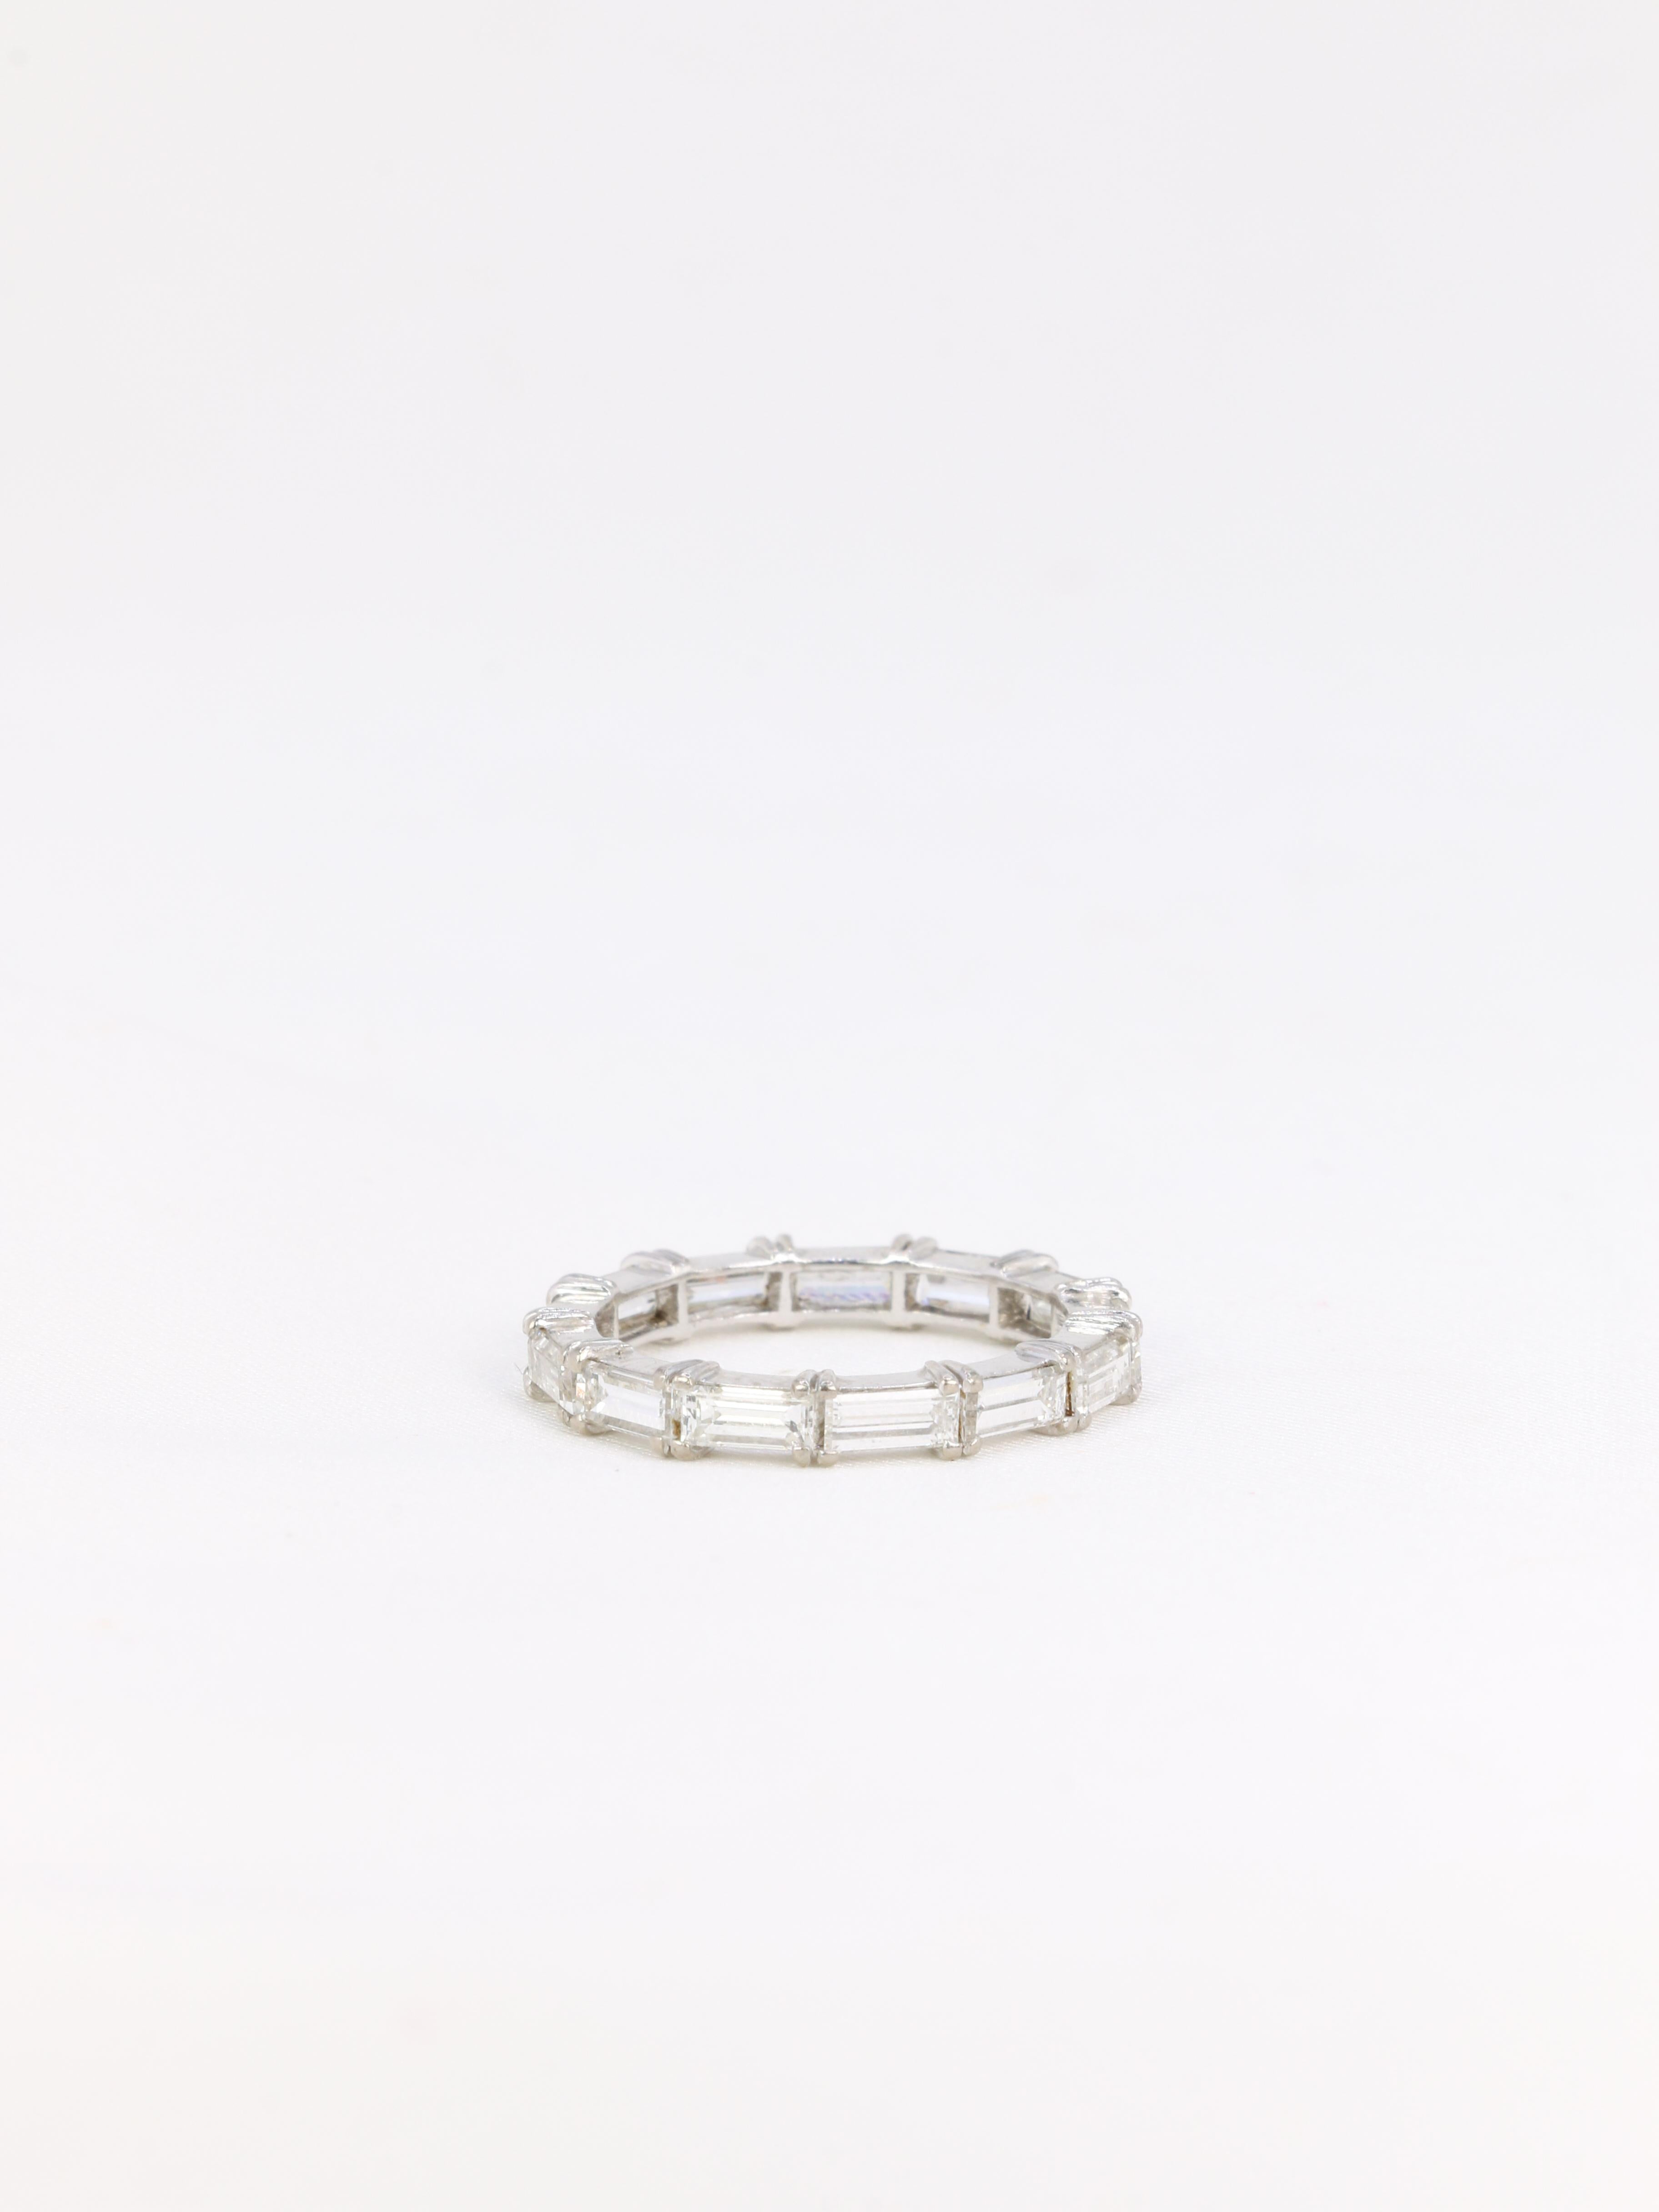 Baguette Cut Vintage white gold eternity ring set with 2ct baguette-cut diamonds